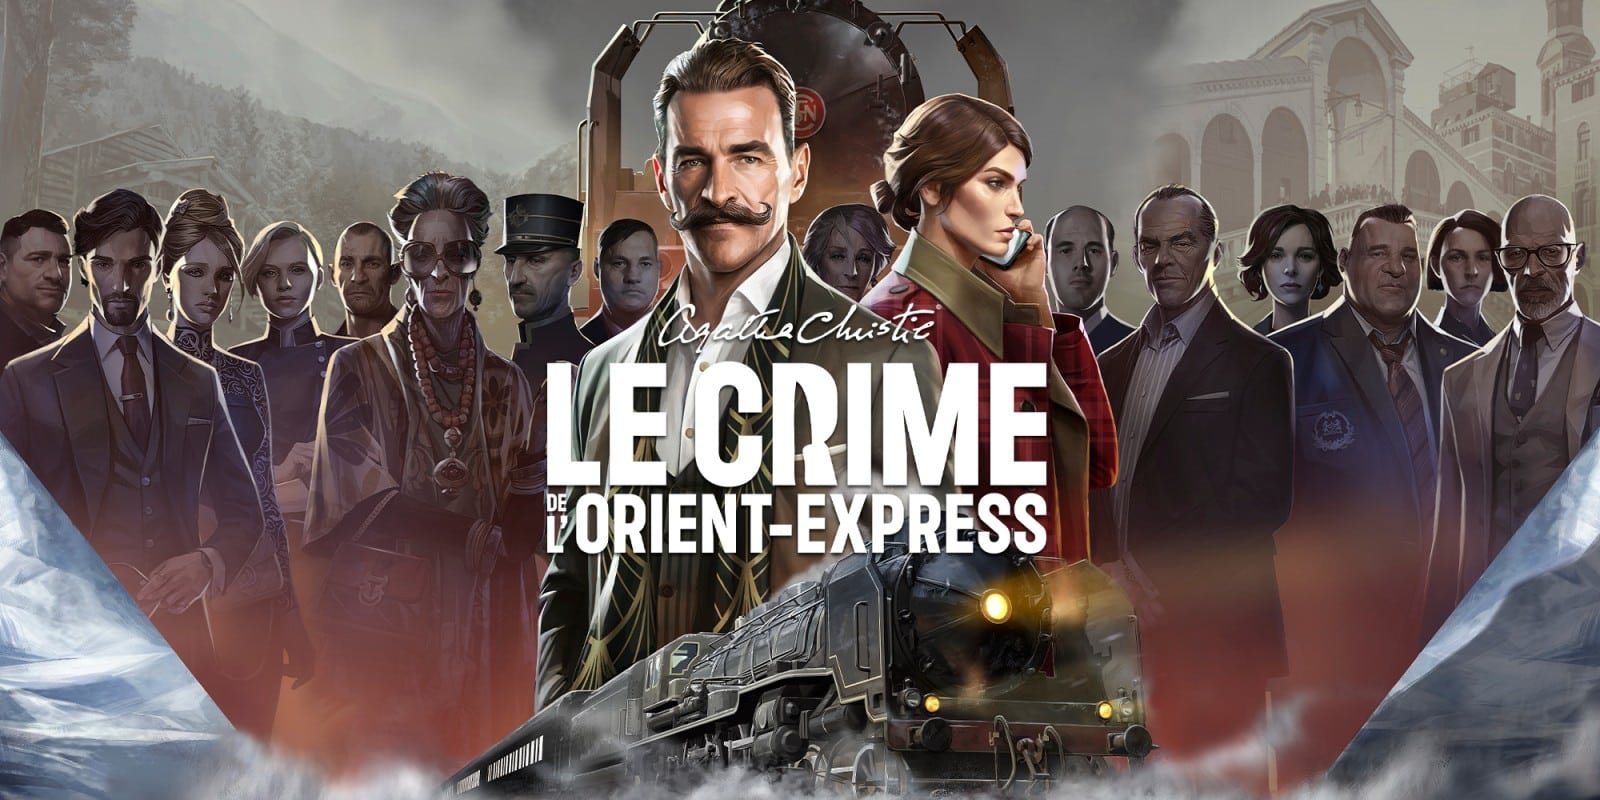 Agatha Christie – Le Crime de l’Orient-Express sort aujourd’hui